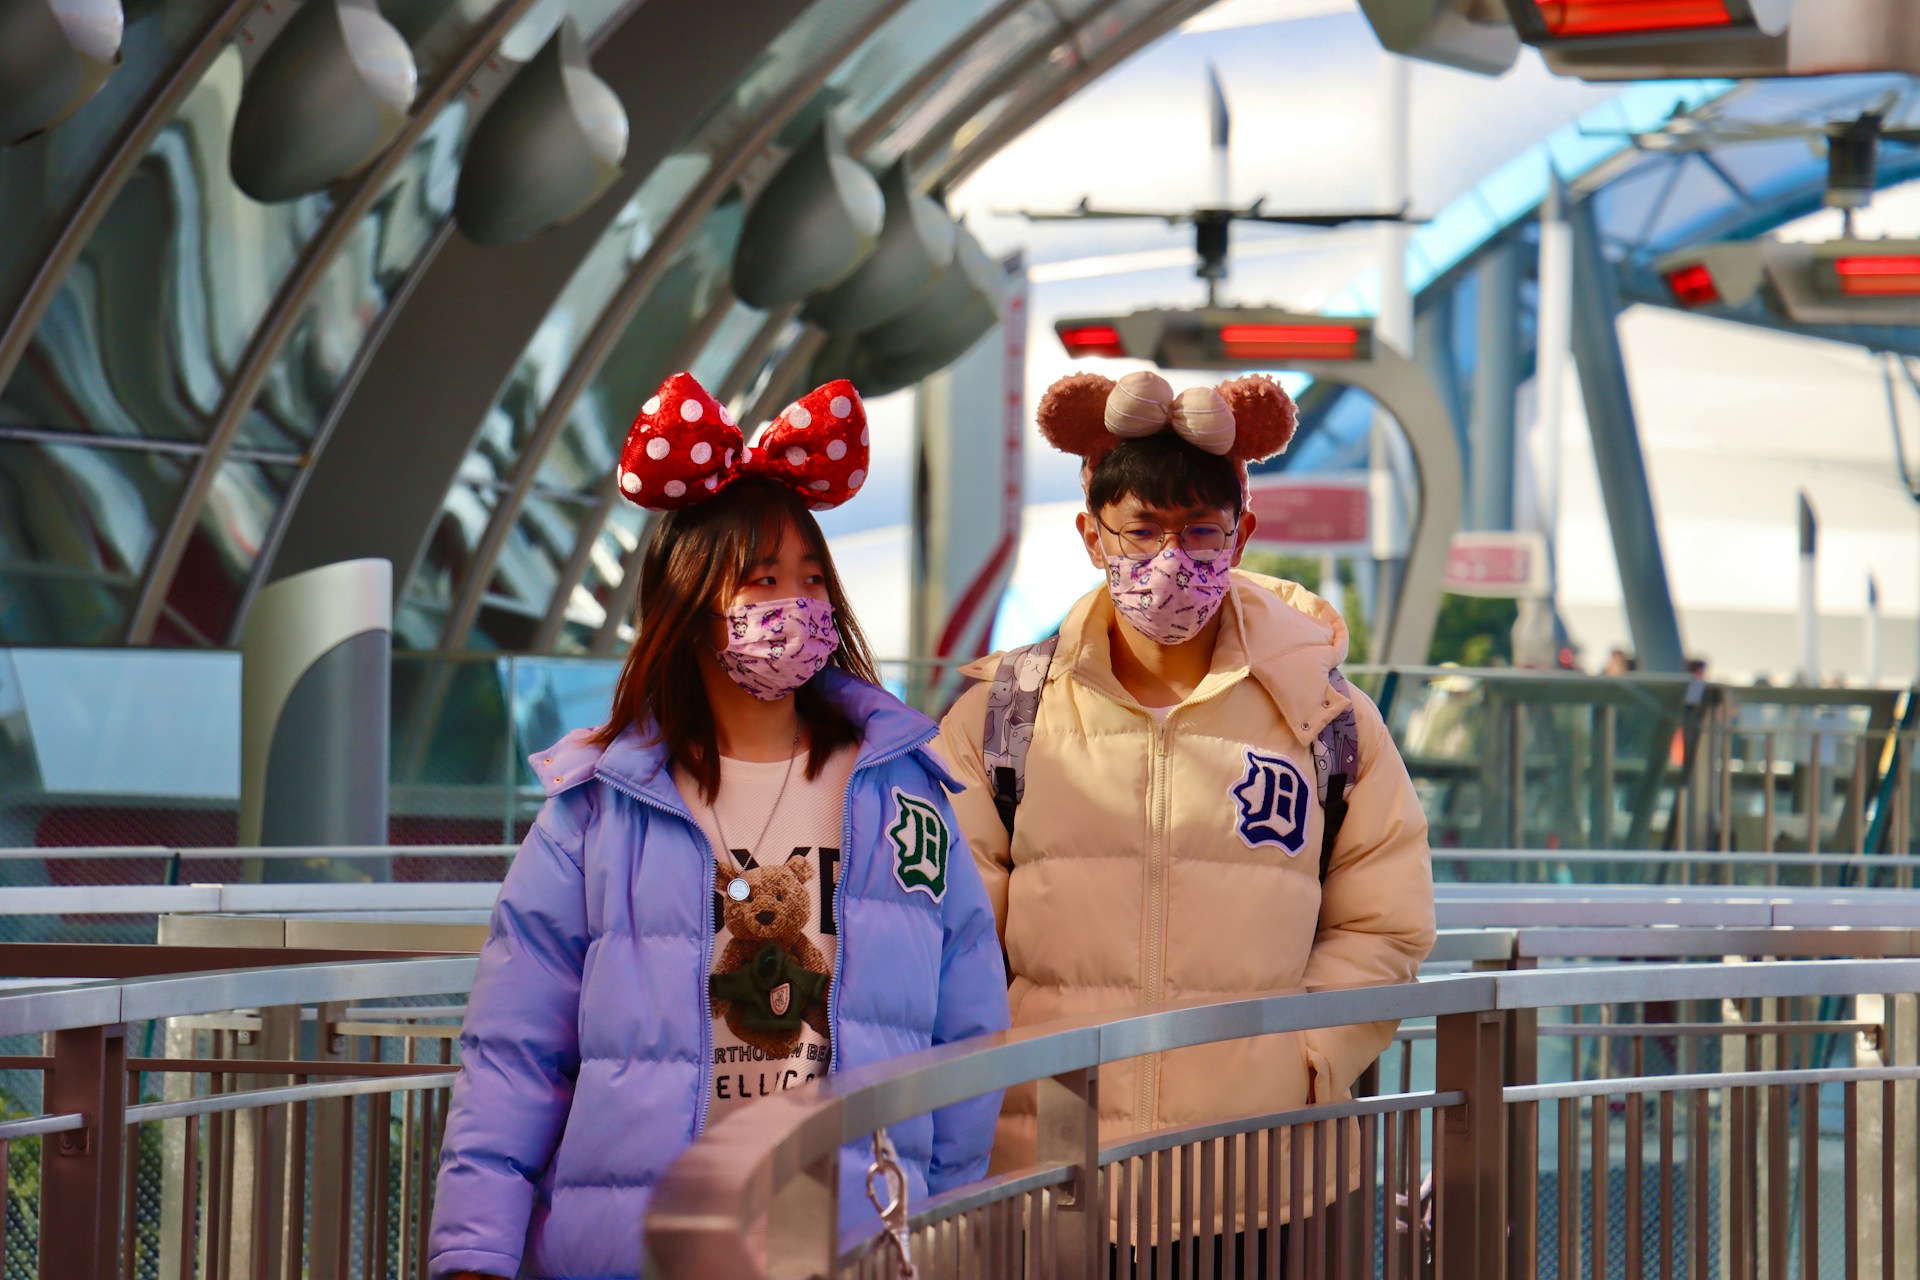 Disneyland Shanghai